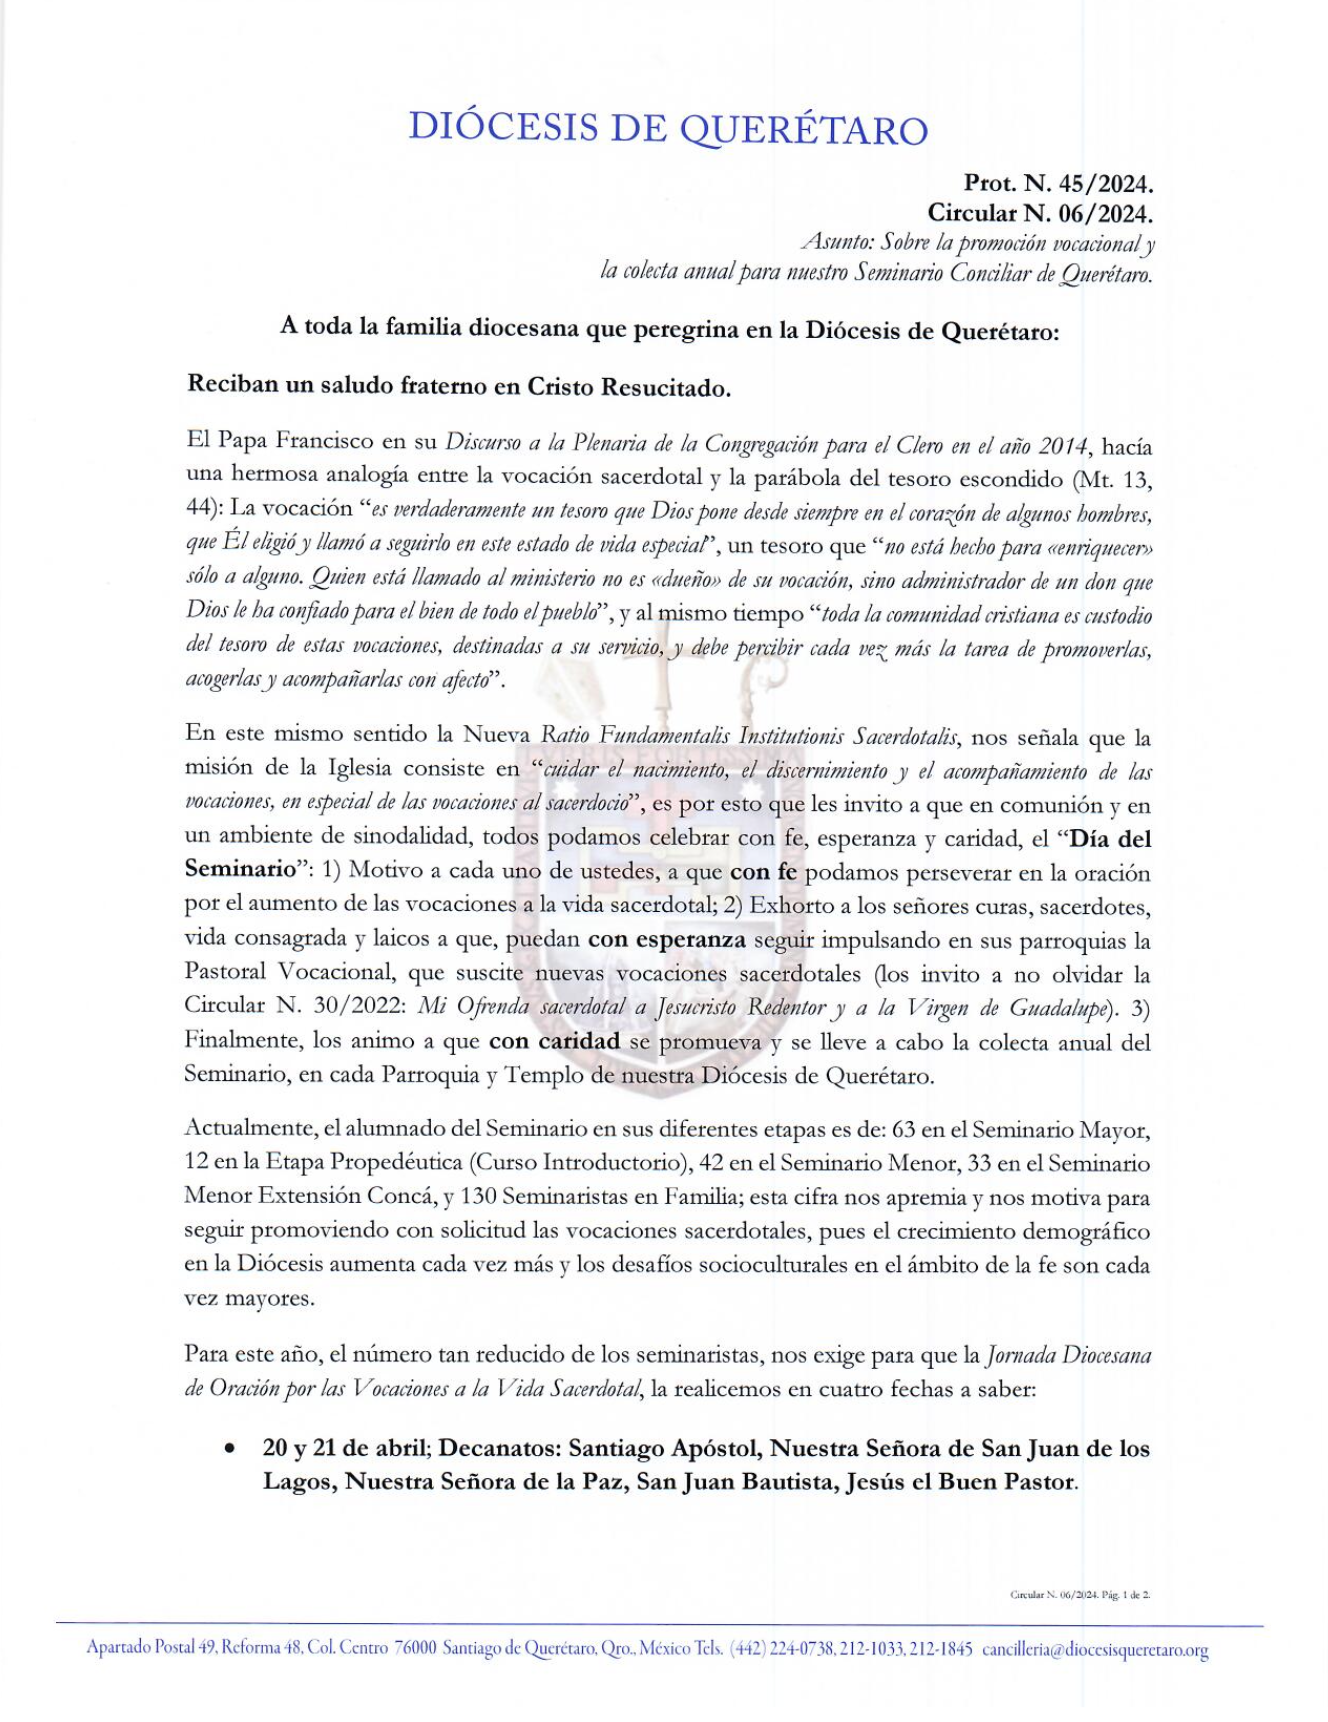 Circular N. 06/2024. Prot. N. 45/2024. Asunto: Sobre la promoción vocacional y la colecta anual para nuestro Seminario Conciliar de Querétaro. 1